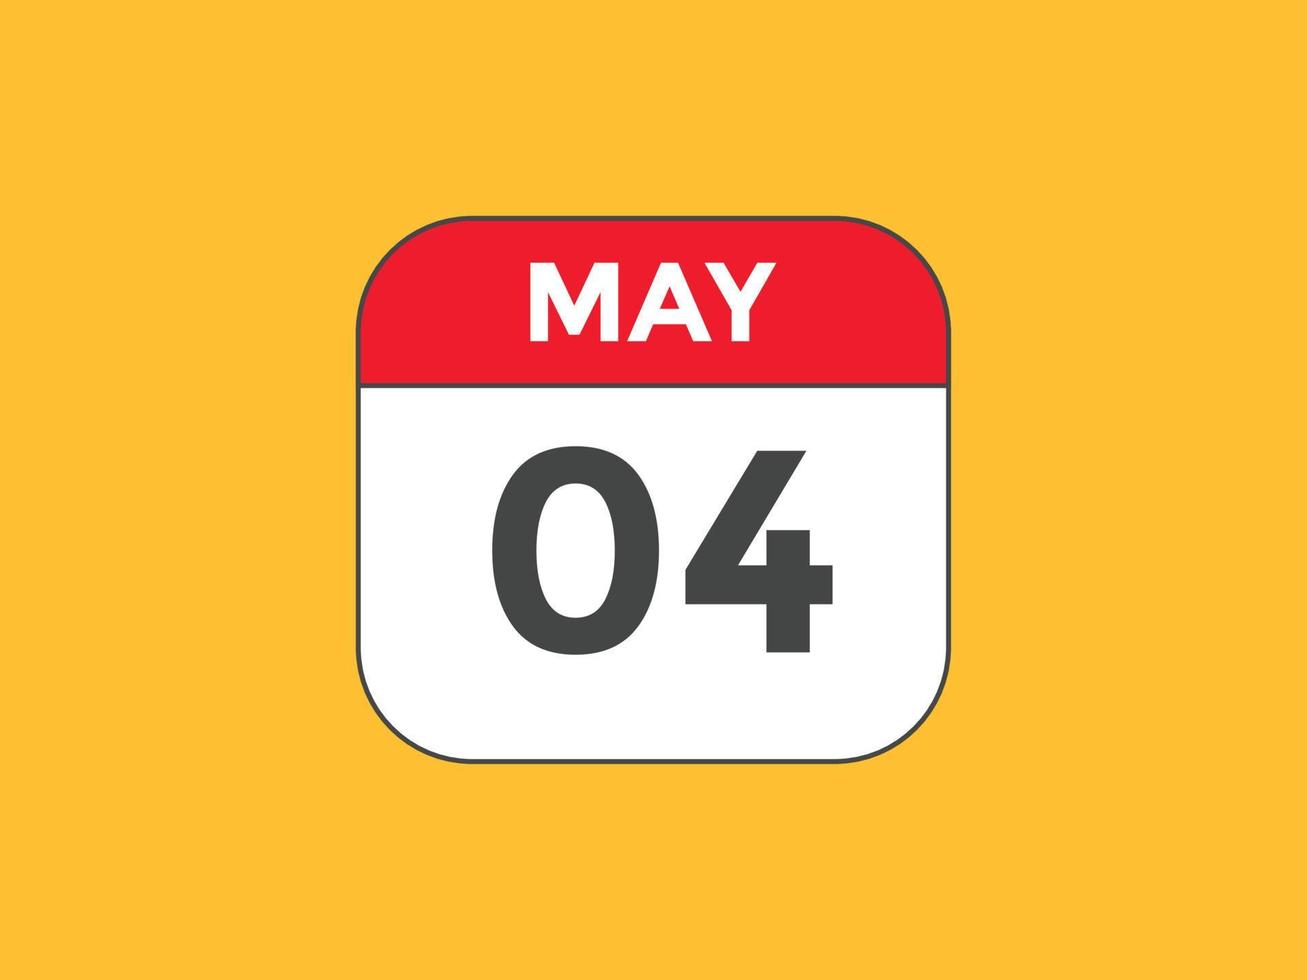 Maj 4 kalender påminnelse. 4:e Maj dagligen kalender ikon mall. kalender 4:e Maj ikon design mall. vektor illustration